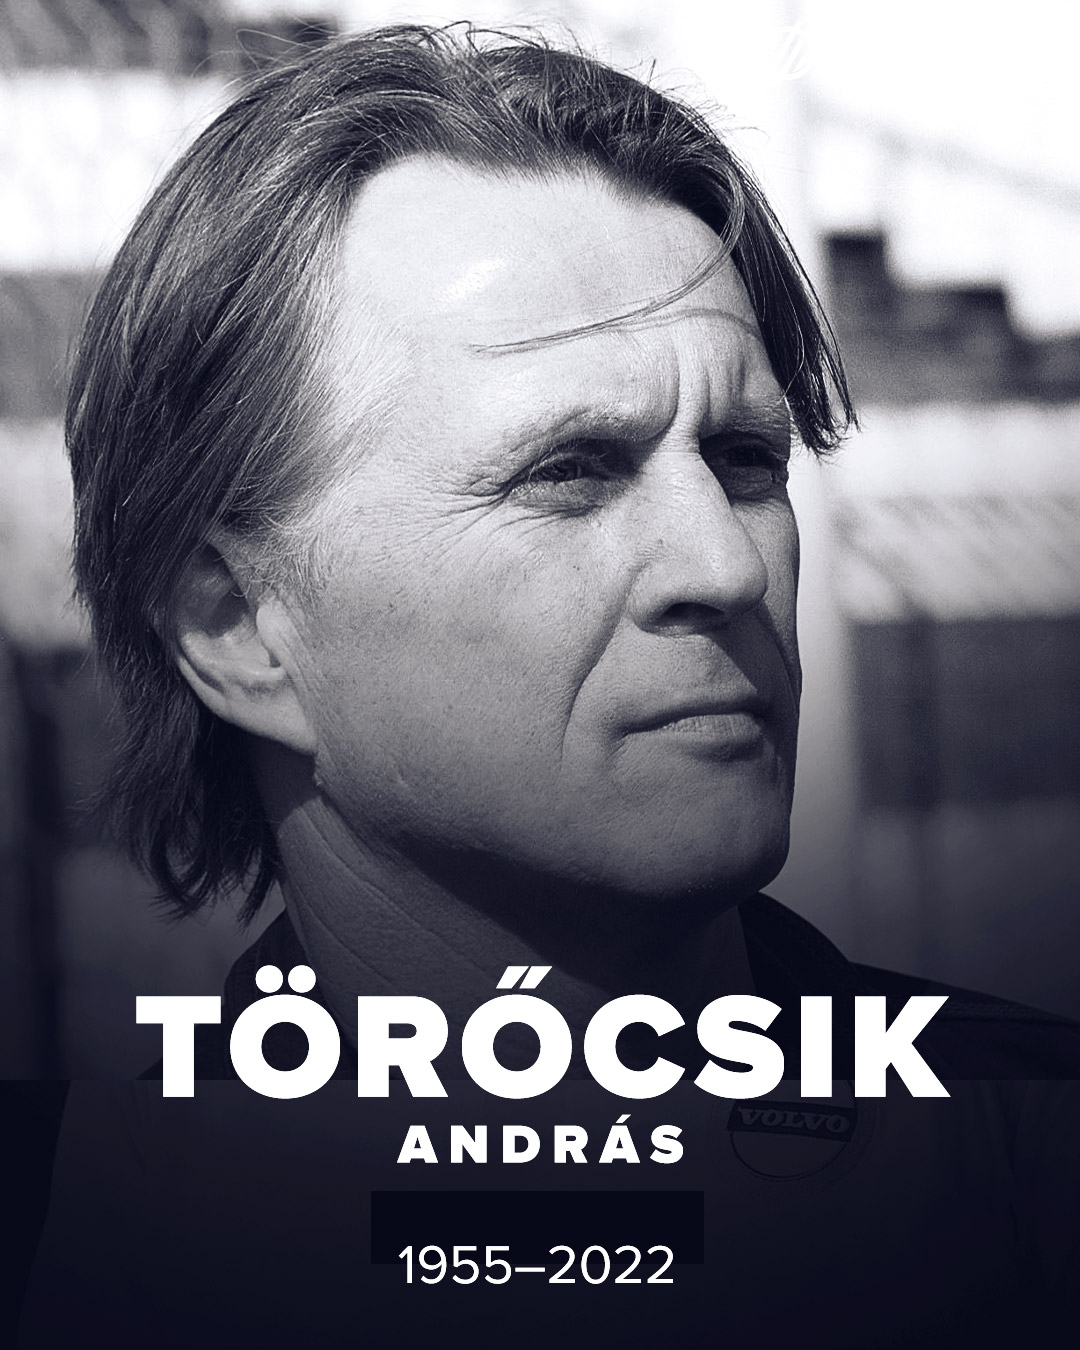 Elhunyt Törőcsik András, az Újpest legendás labdarúgója